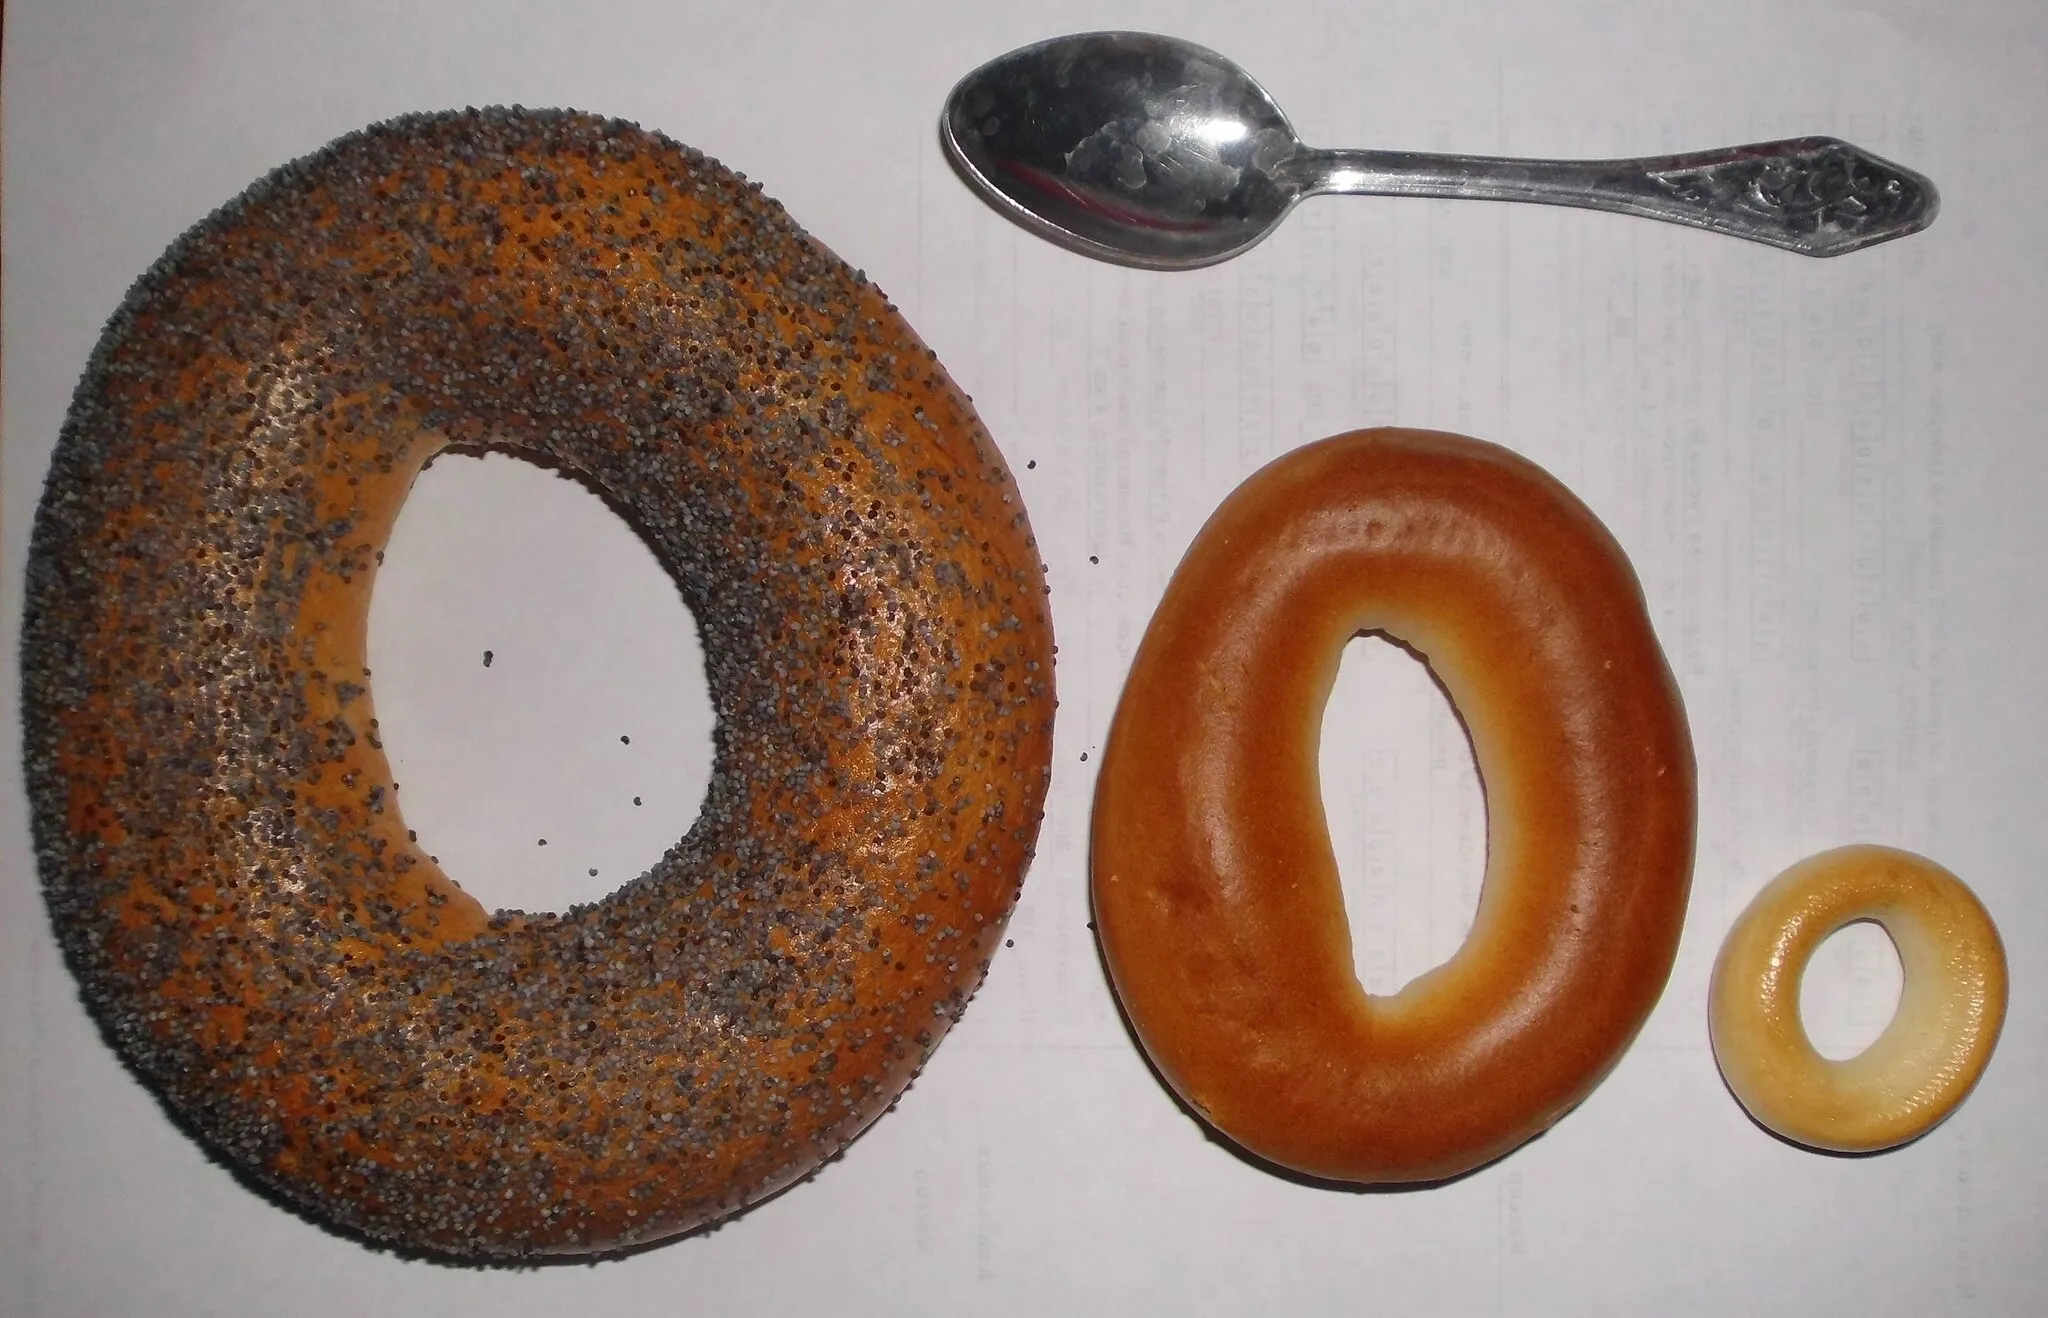 Photo showing: Бараночные изделия (слева-направо): Бублик, Баранка, Сушка. Для сравнения размера - стандартная чайная ложка.